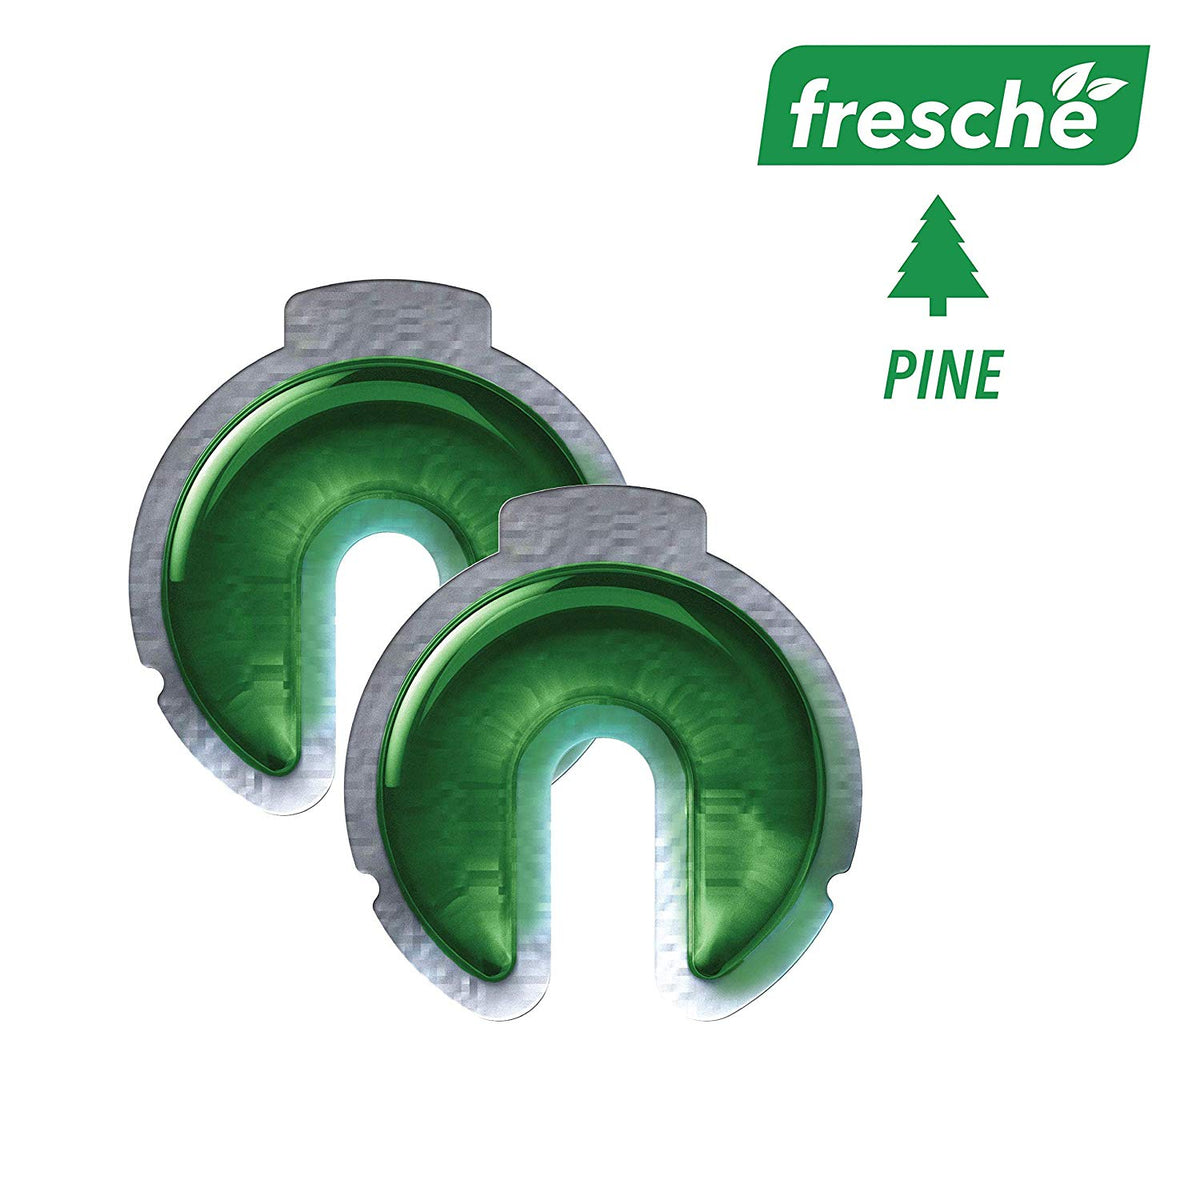 SCOSCHE Air Freshener Refill Cartridges for Fresche Mounts - 2 Packs - Pine